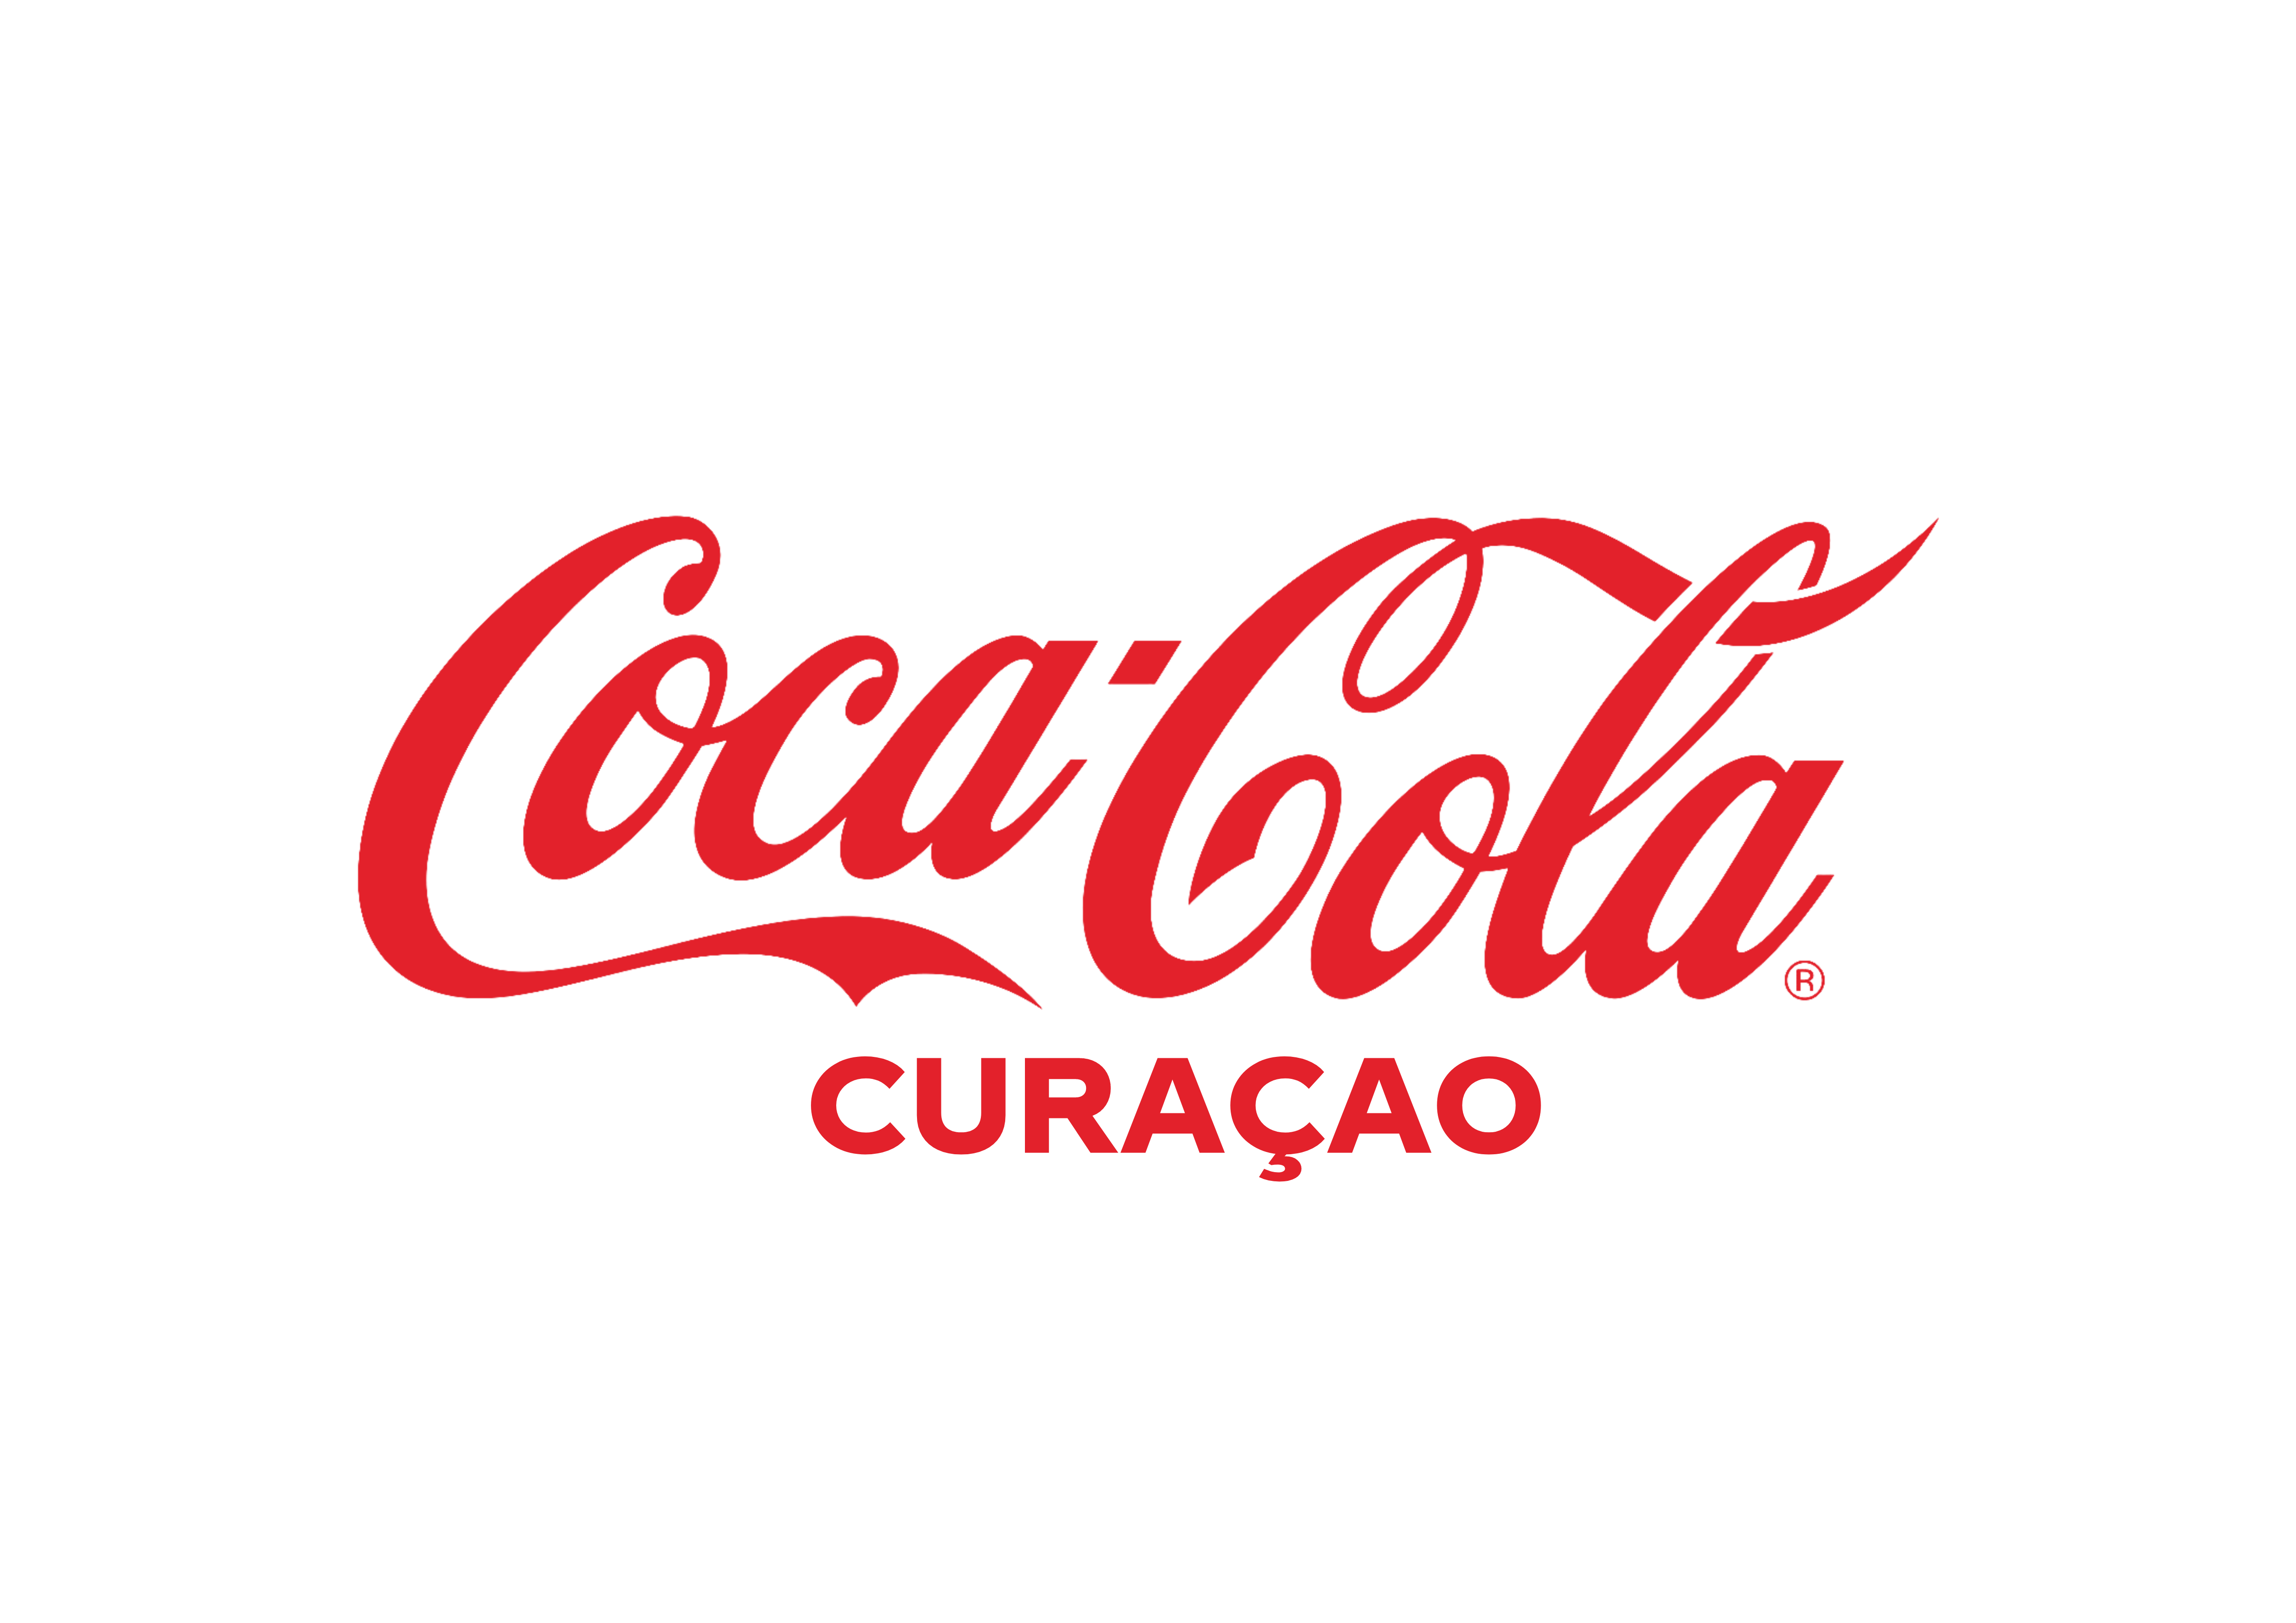 Coca-Cola Curaçao